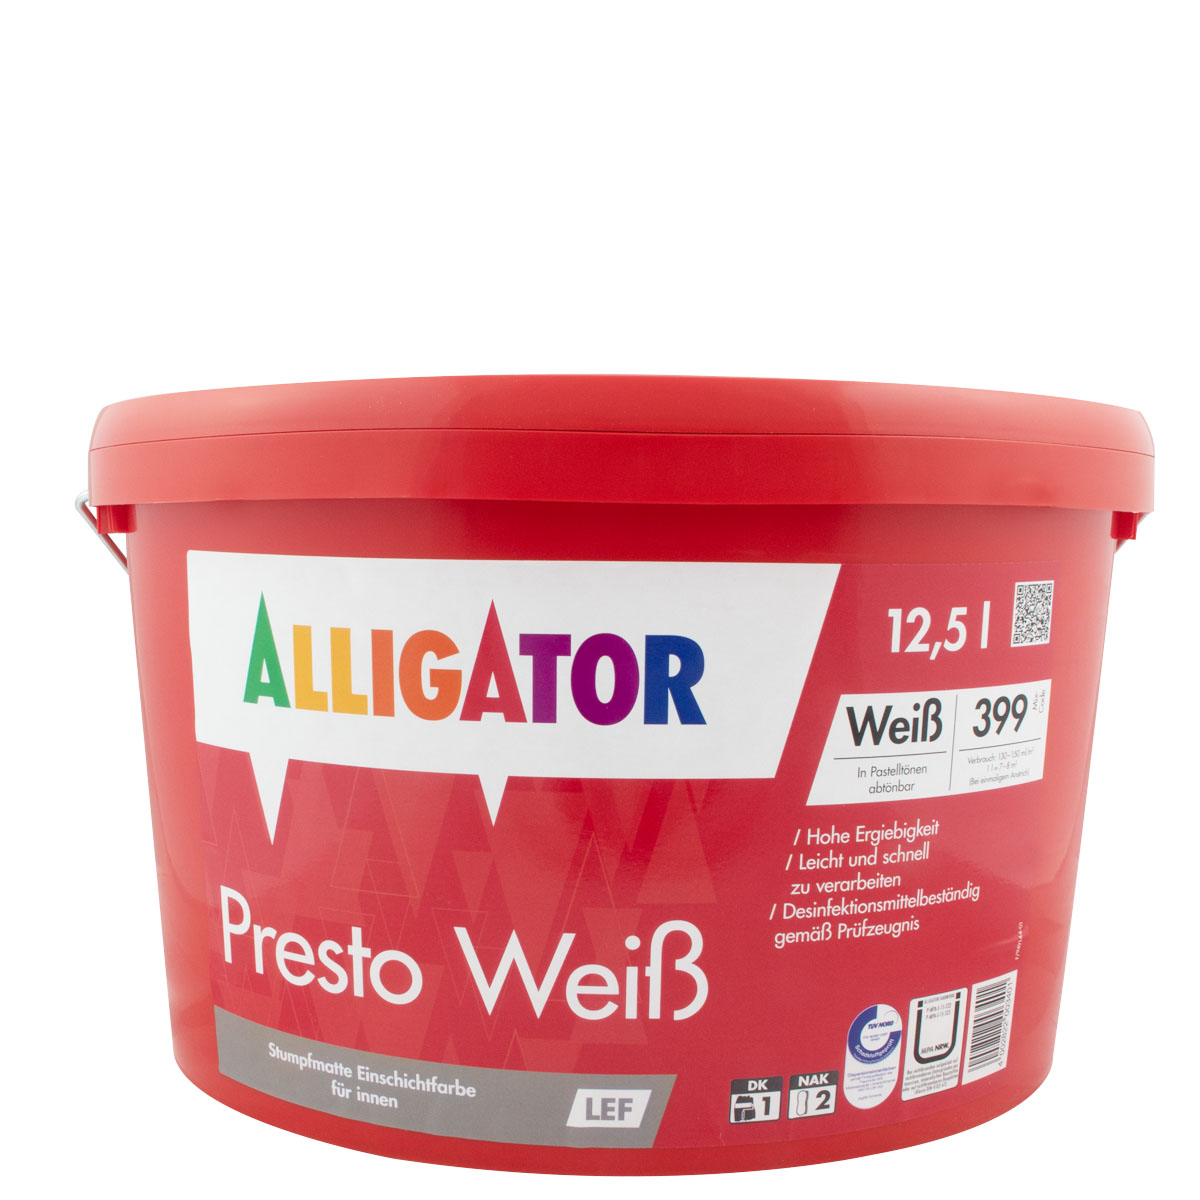 Alligator Presto Weiß LEF 12,5L weiß, hochdeckende Wandfarbe, Dispersionsfarbe